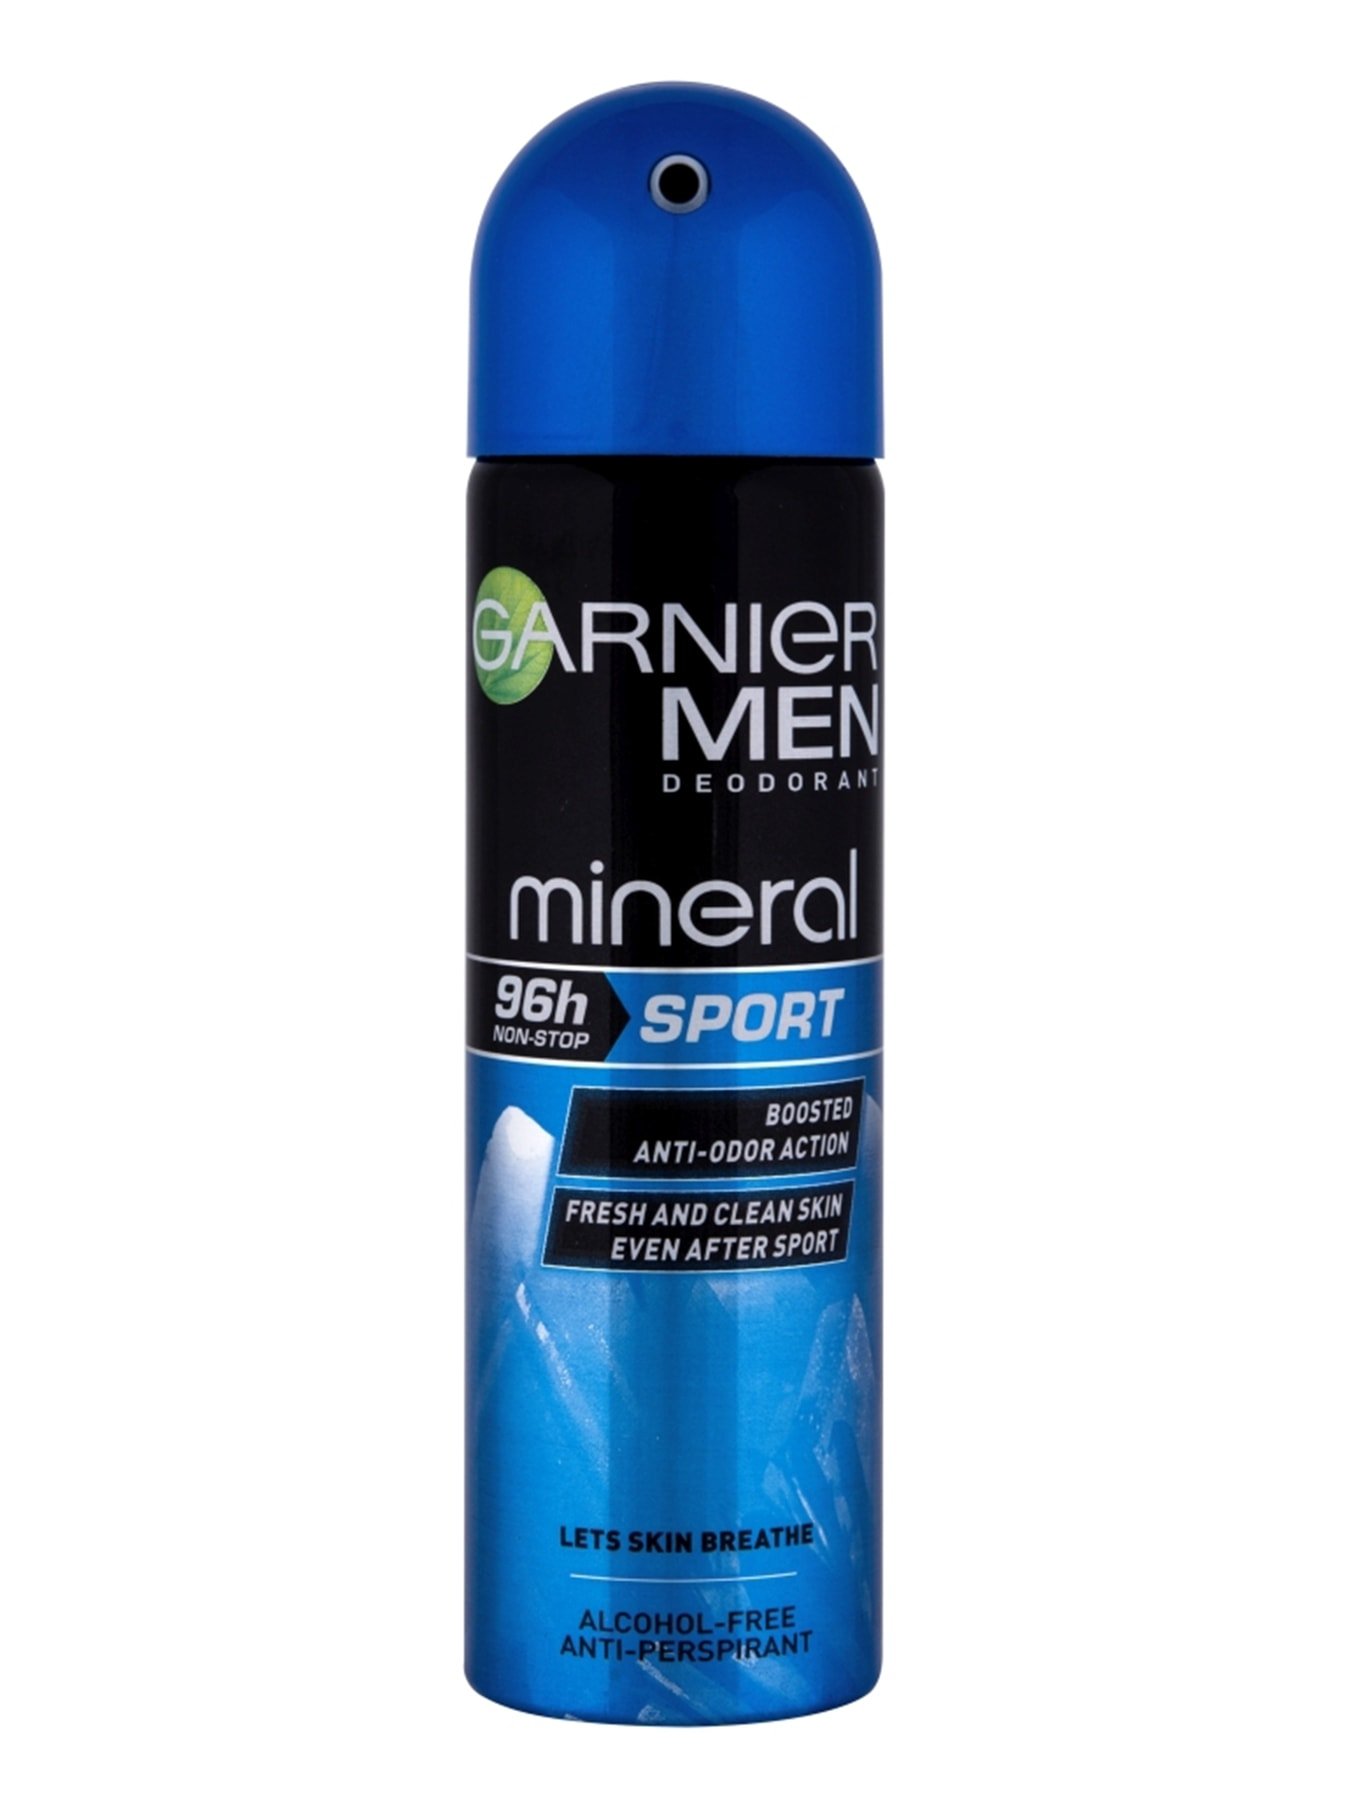 Garnier Mineral Deo Men Anti-perspirant 96H Sport Sprej 